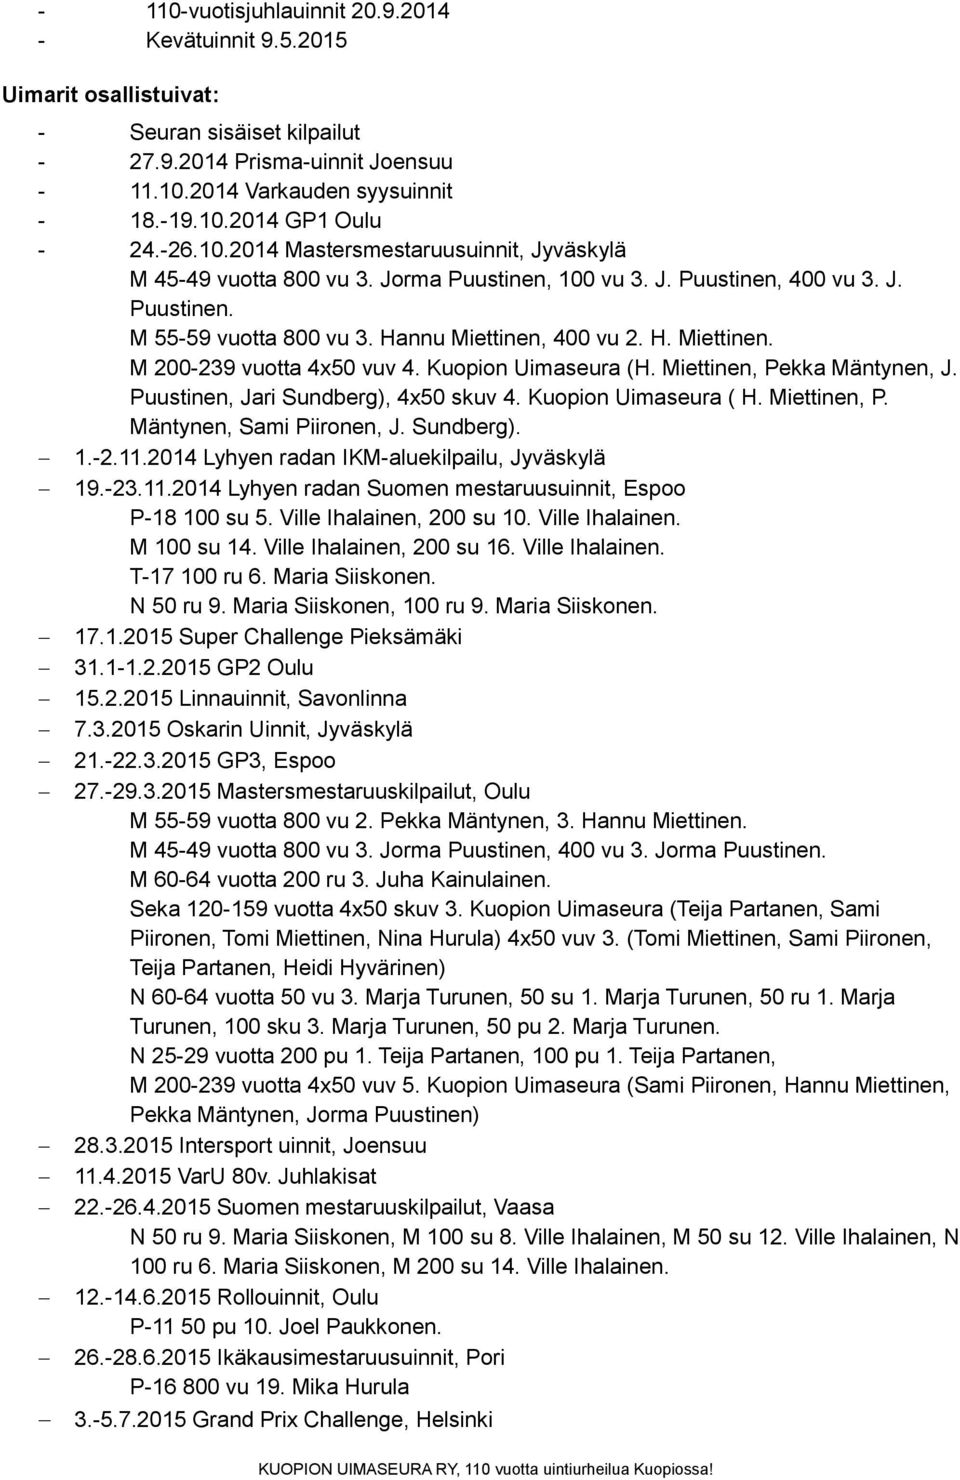 Miettinen, Pekka Mäntynen, J. Puustinen, Jari Sundberg), 4x50 skuv 4. Kuopion Uimaseura ( H. Miettinen, P. Mäntynen, Sami Piironen, J. Sundberg). 1.2.11.